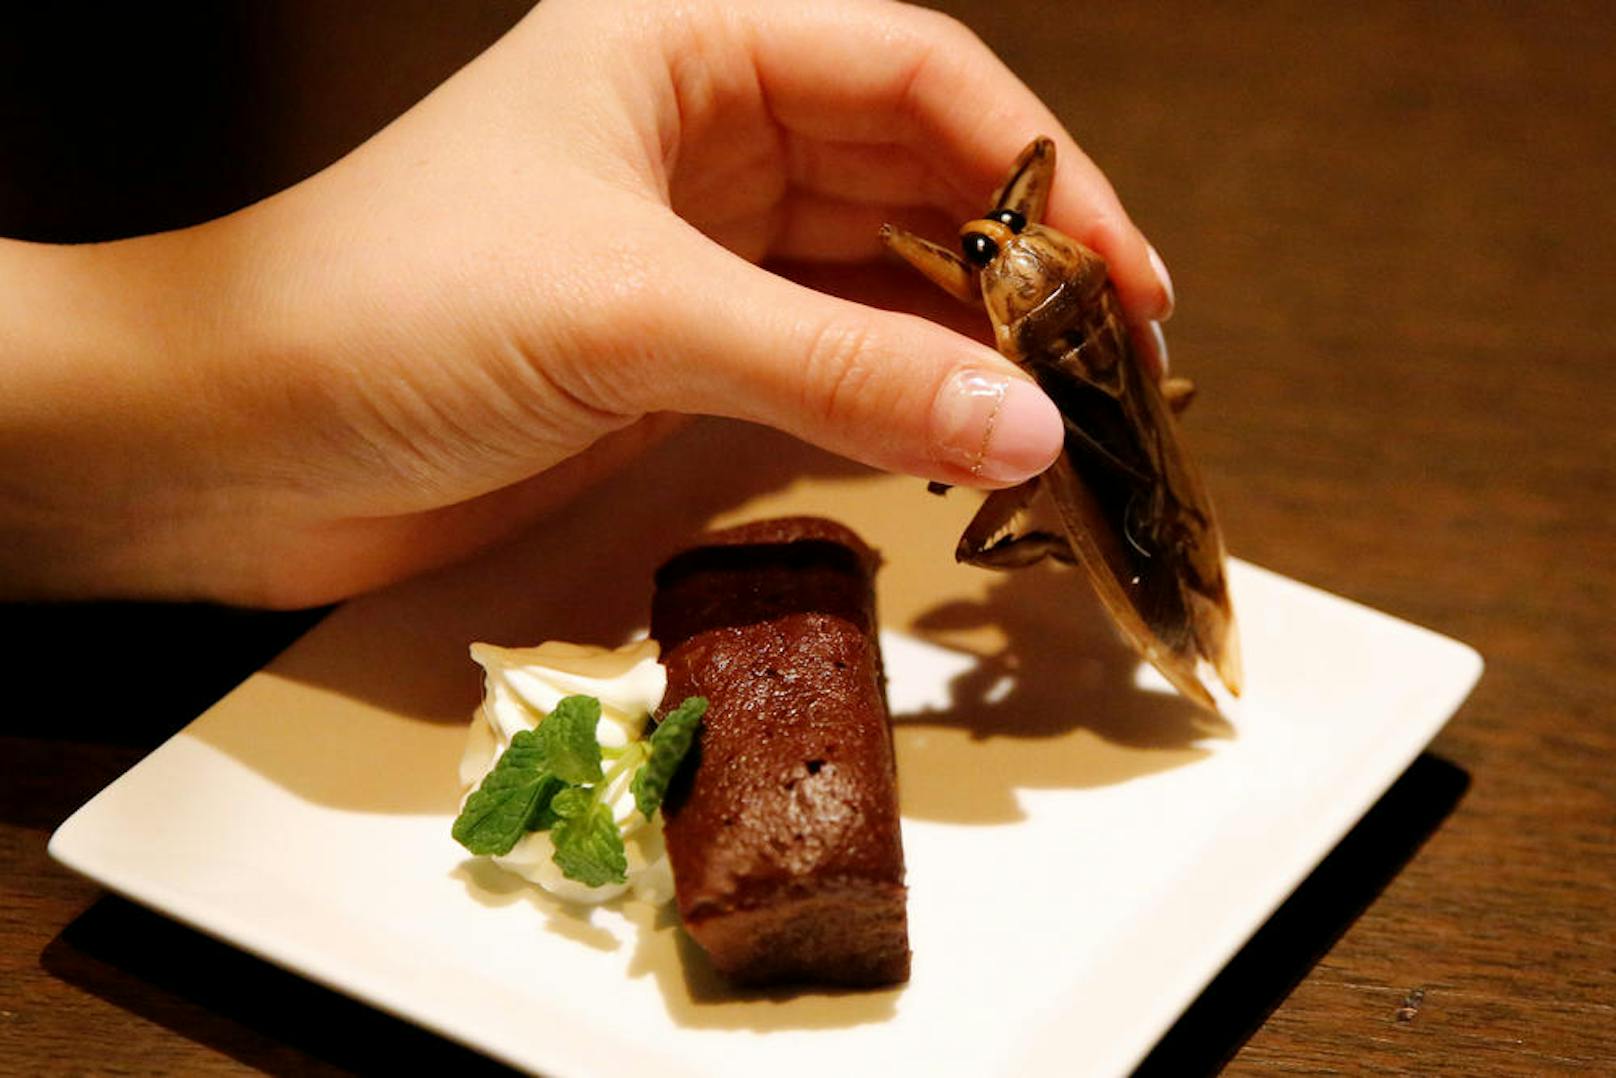 13.02.2017: Schokokuchen mit Wasserwanze:
Schokoladekuchen, Schlagobers und ein Insekt, das einer Kakerlake ziemlich ähnlich sieht. In einer Bar in Tokyo wird das als neuer Food Trend verkauft. Na dann: Mahlzeit!